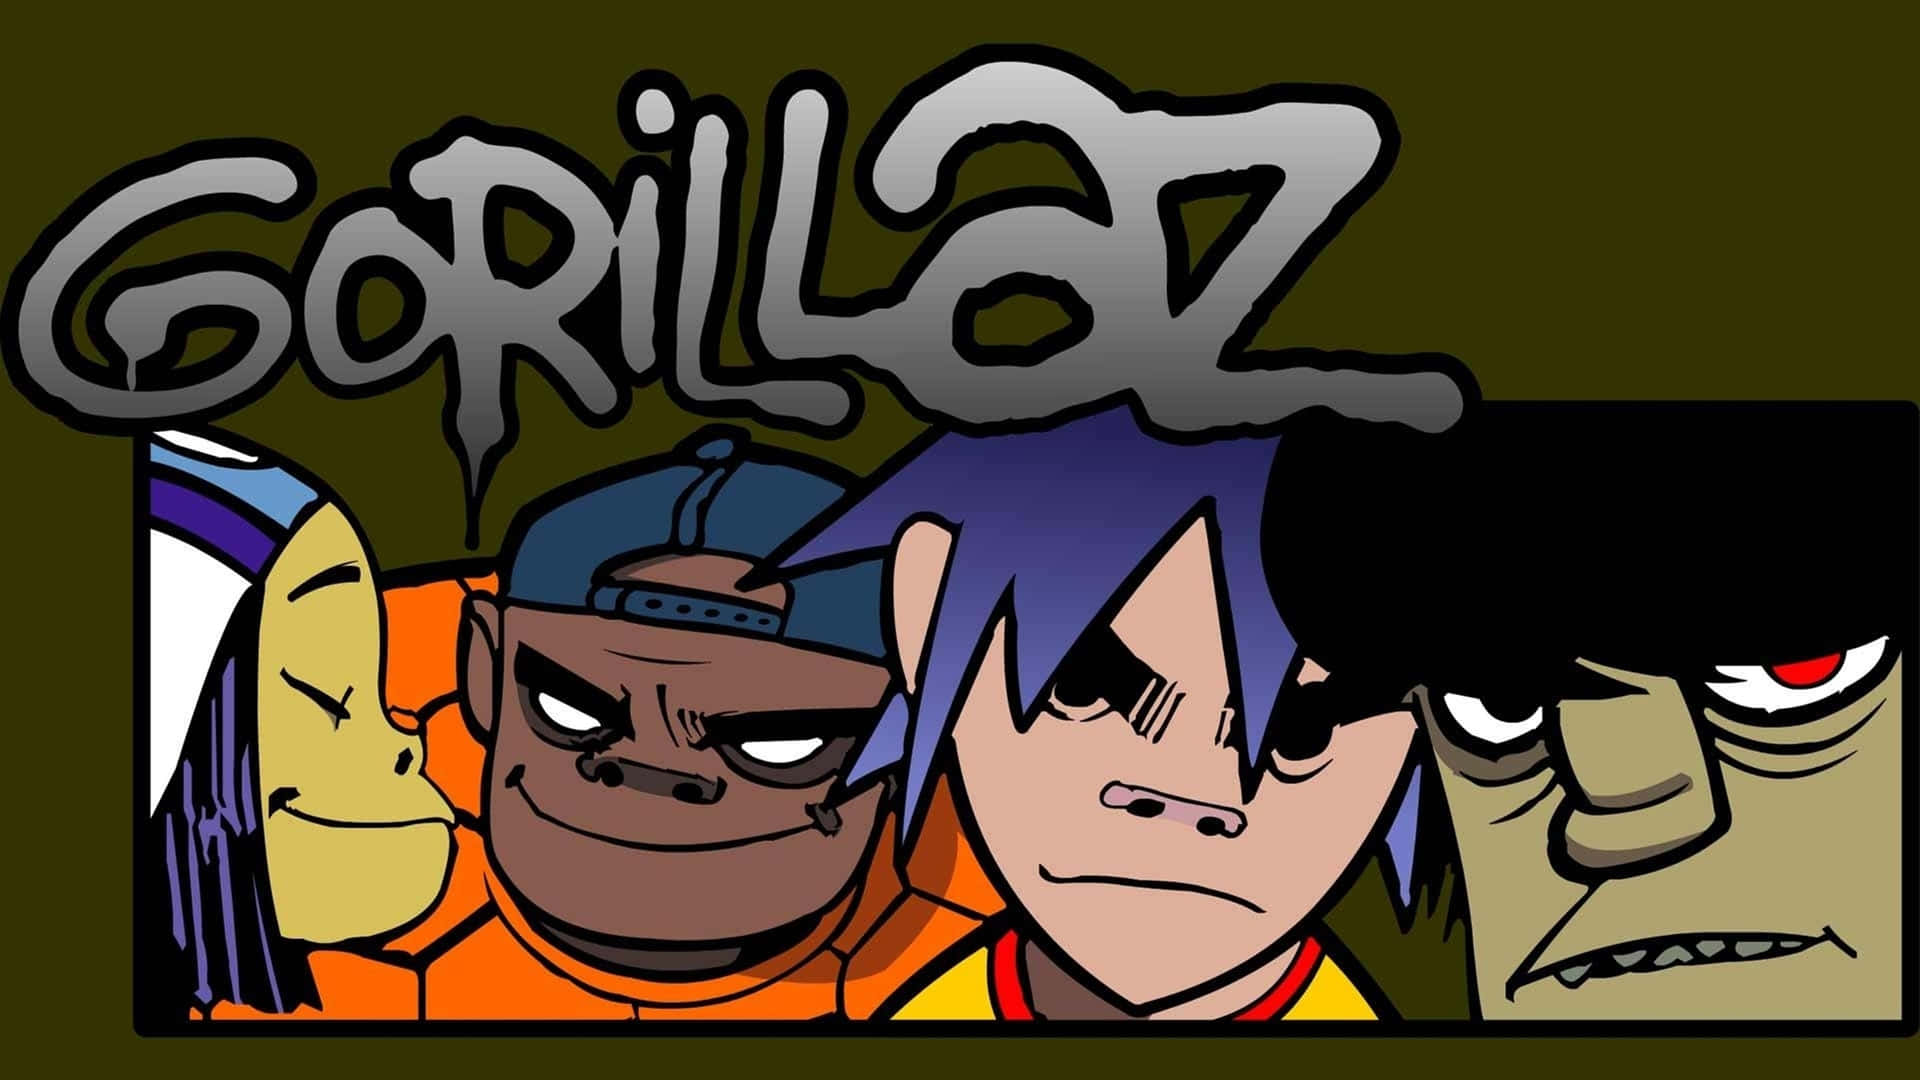 Gorillaz's virtuelle bandmedlemmer - 2D, Murdoc, Noodle og Russel - som illustreret i HD 4K herlighed. Wallpaper